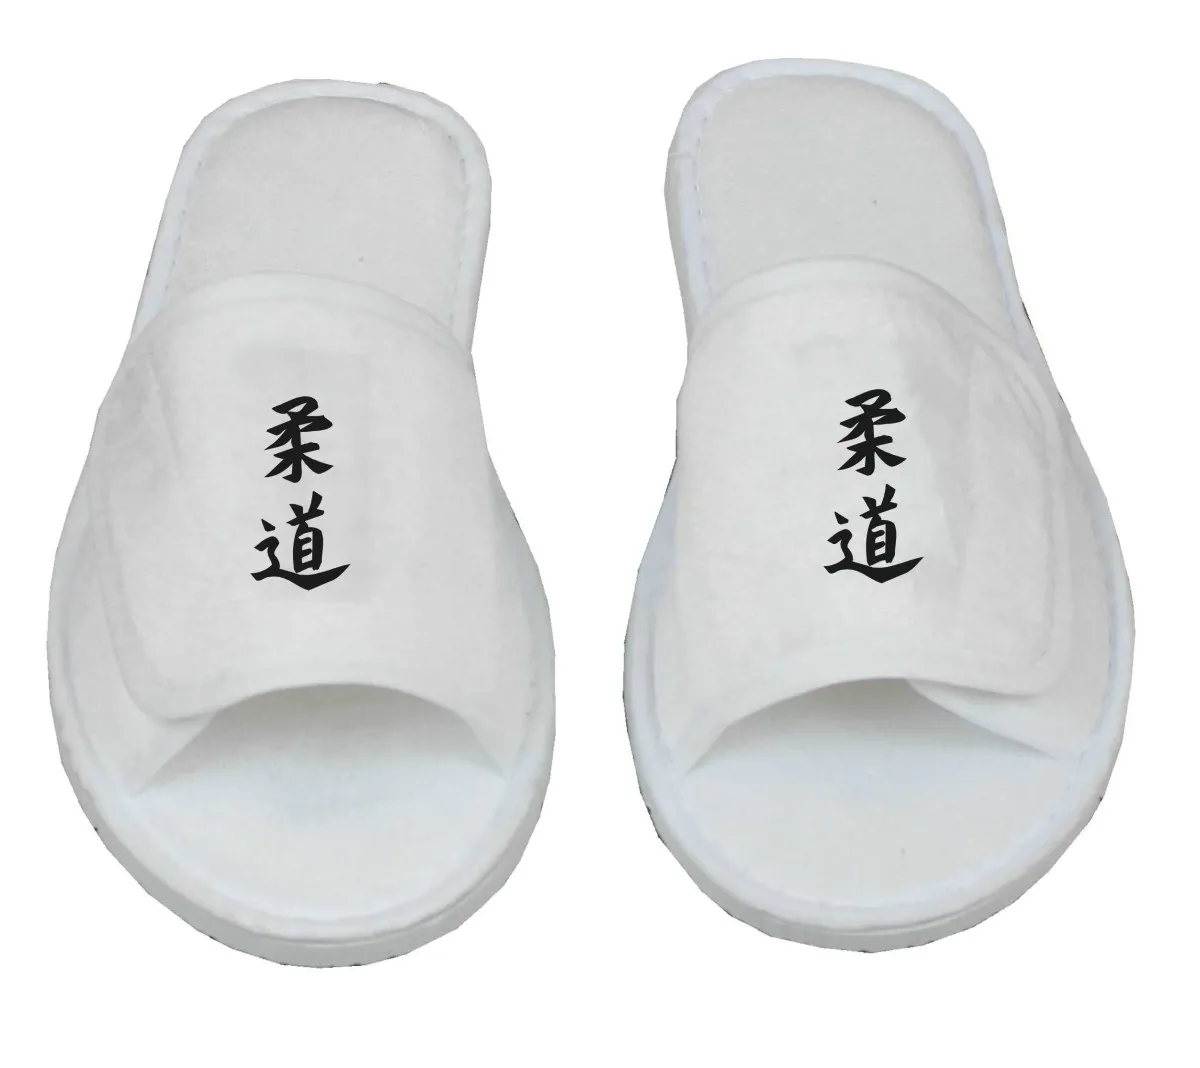 Kung Fu zapatos negro con suela de goma - Kopie